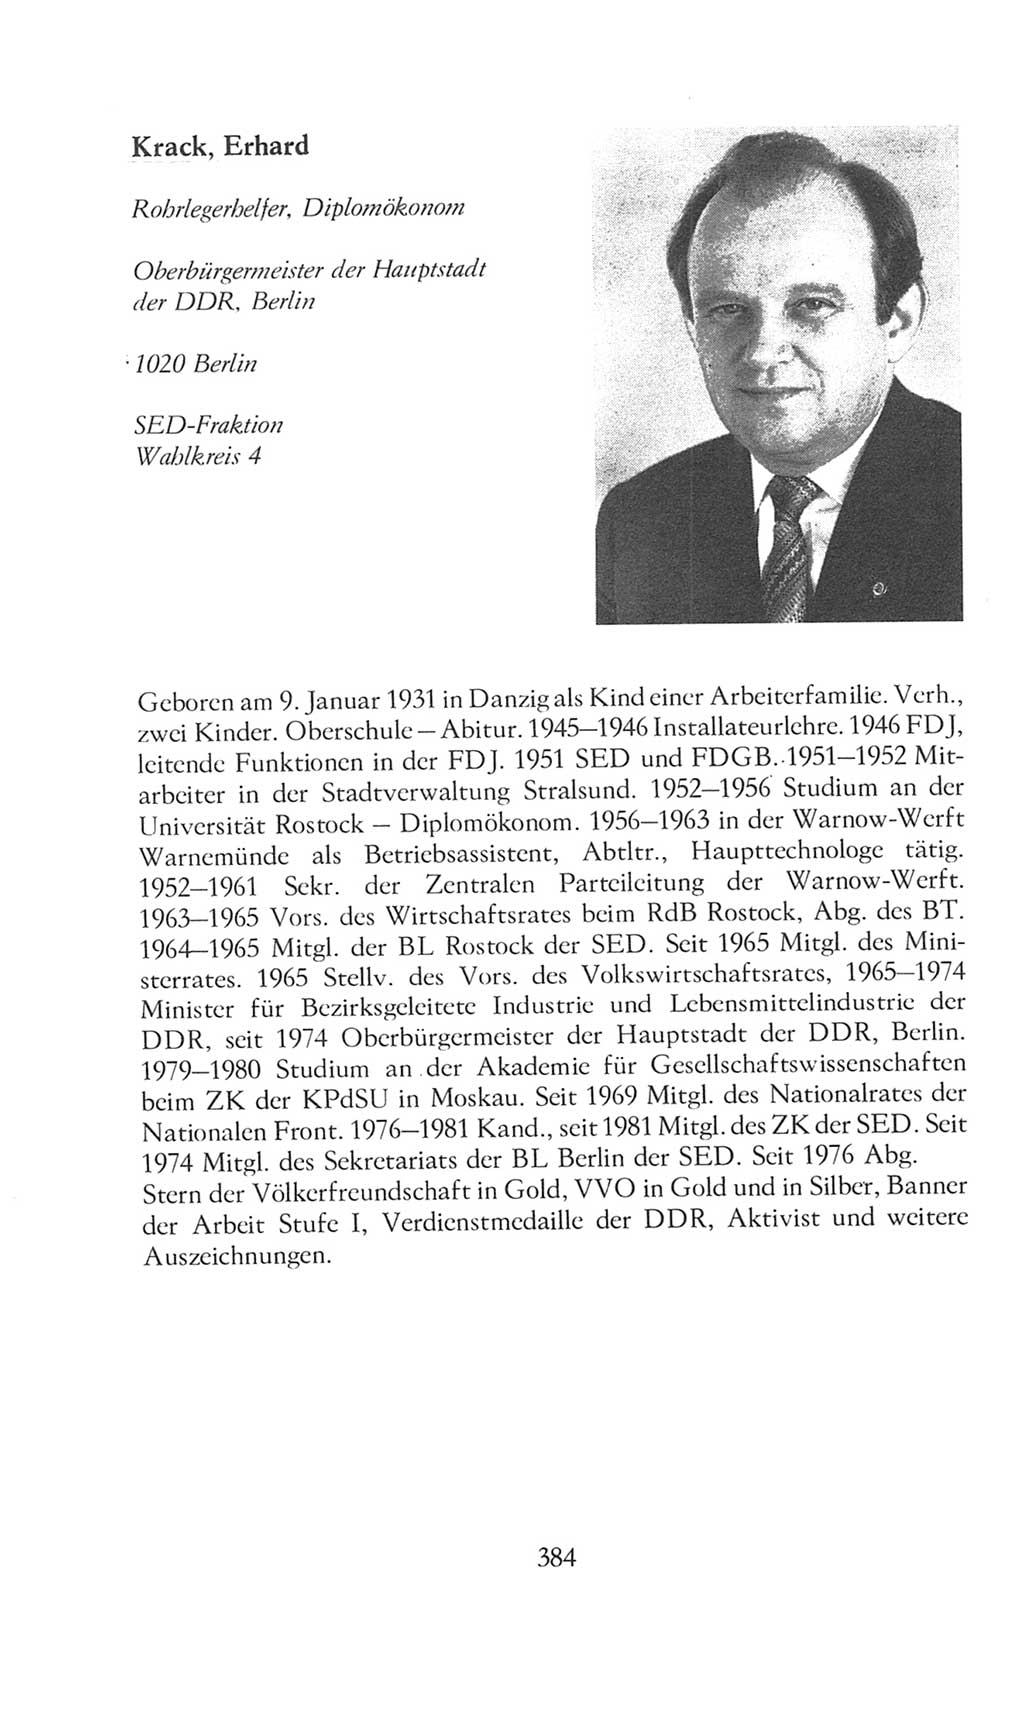 Volkskammer (VK) der Deutschen Demokratischen Republik (DDR), 8. Wahlperiode 1981-1986, Seite 384 (VK. DDR 8. WP. 1981-1986, S. 384)